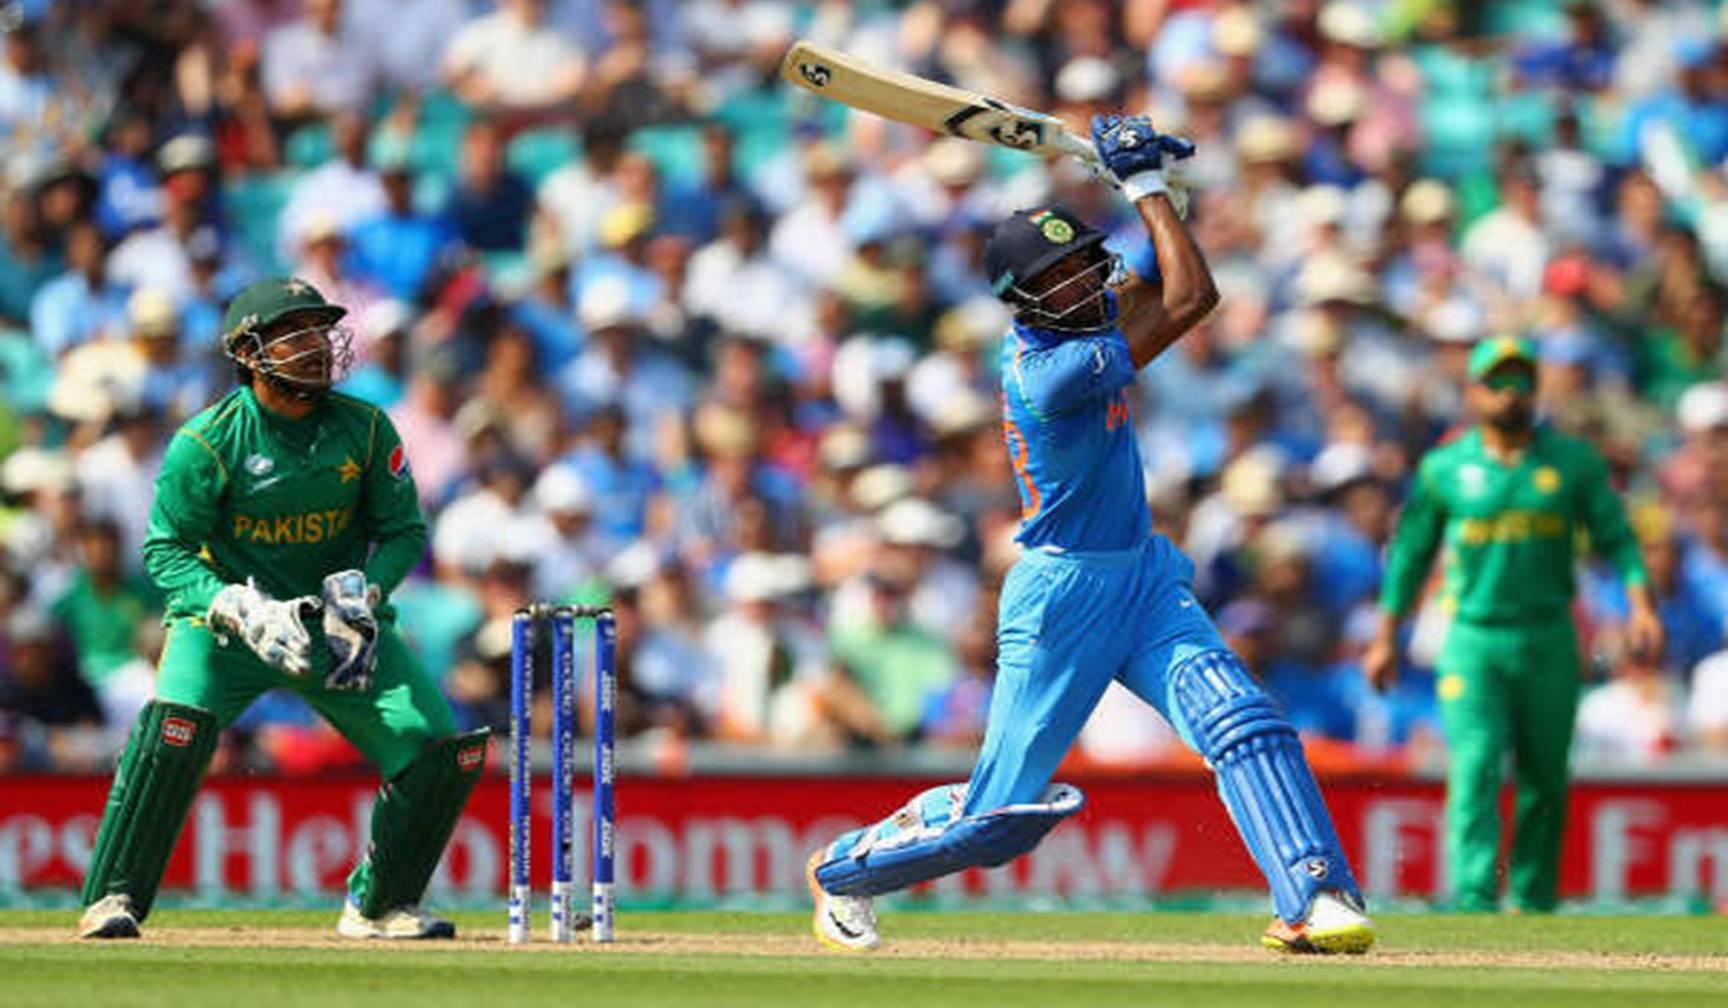 भारत और पाकिस्तान के खिलाड़ियों को मिलकर बनेगी सबसे खतरनाक टीम